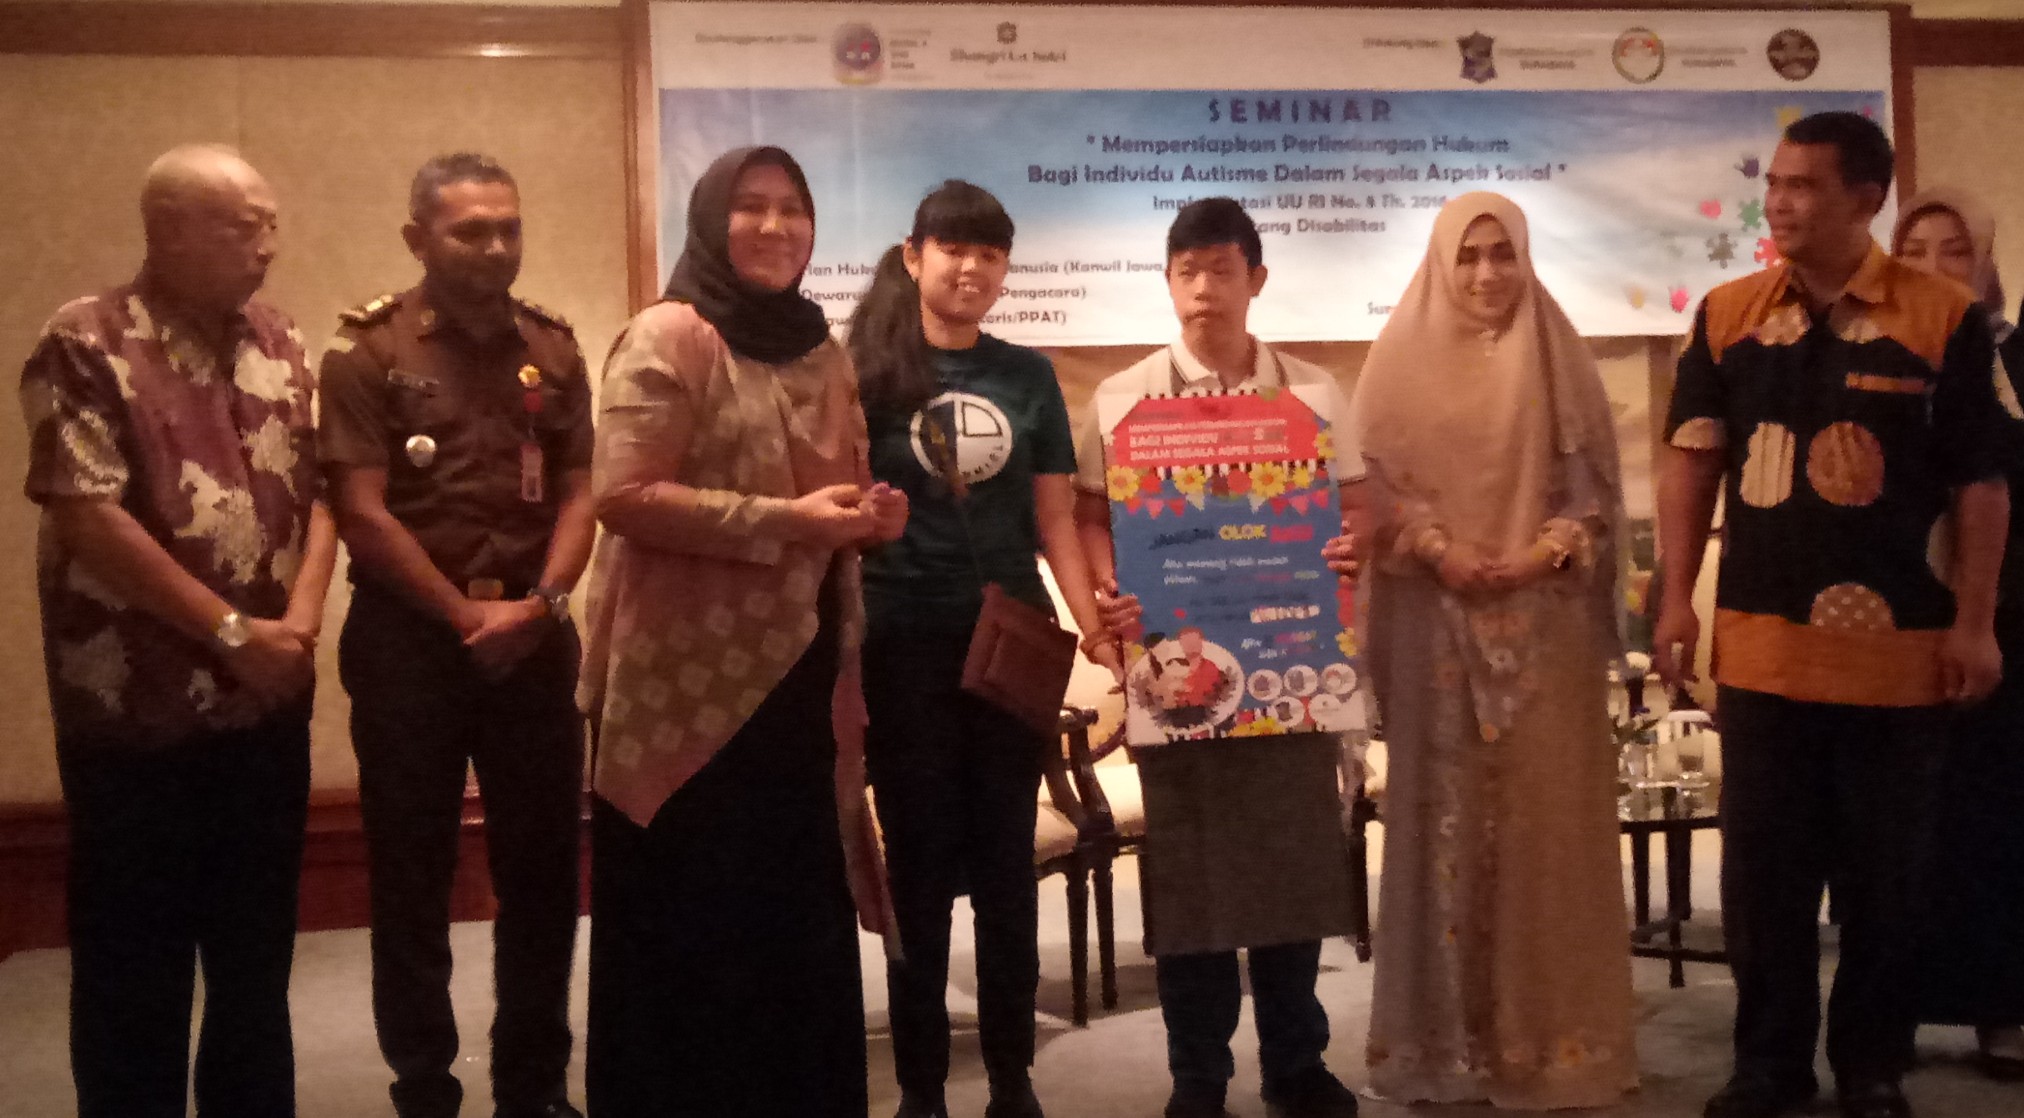 Suasana seminar yang bertema 'Mempersipkan Perlindungan Hukum Bagi Individu Autisme Dalam Segala Aspek' pada Selasa, 9 April 2019 bertempat di hotel Shangri-la Surabaya.  (Foto:Pita/ngopibareng.id)